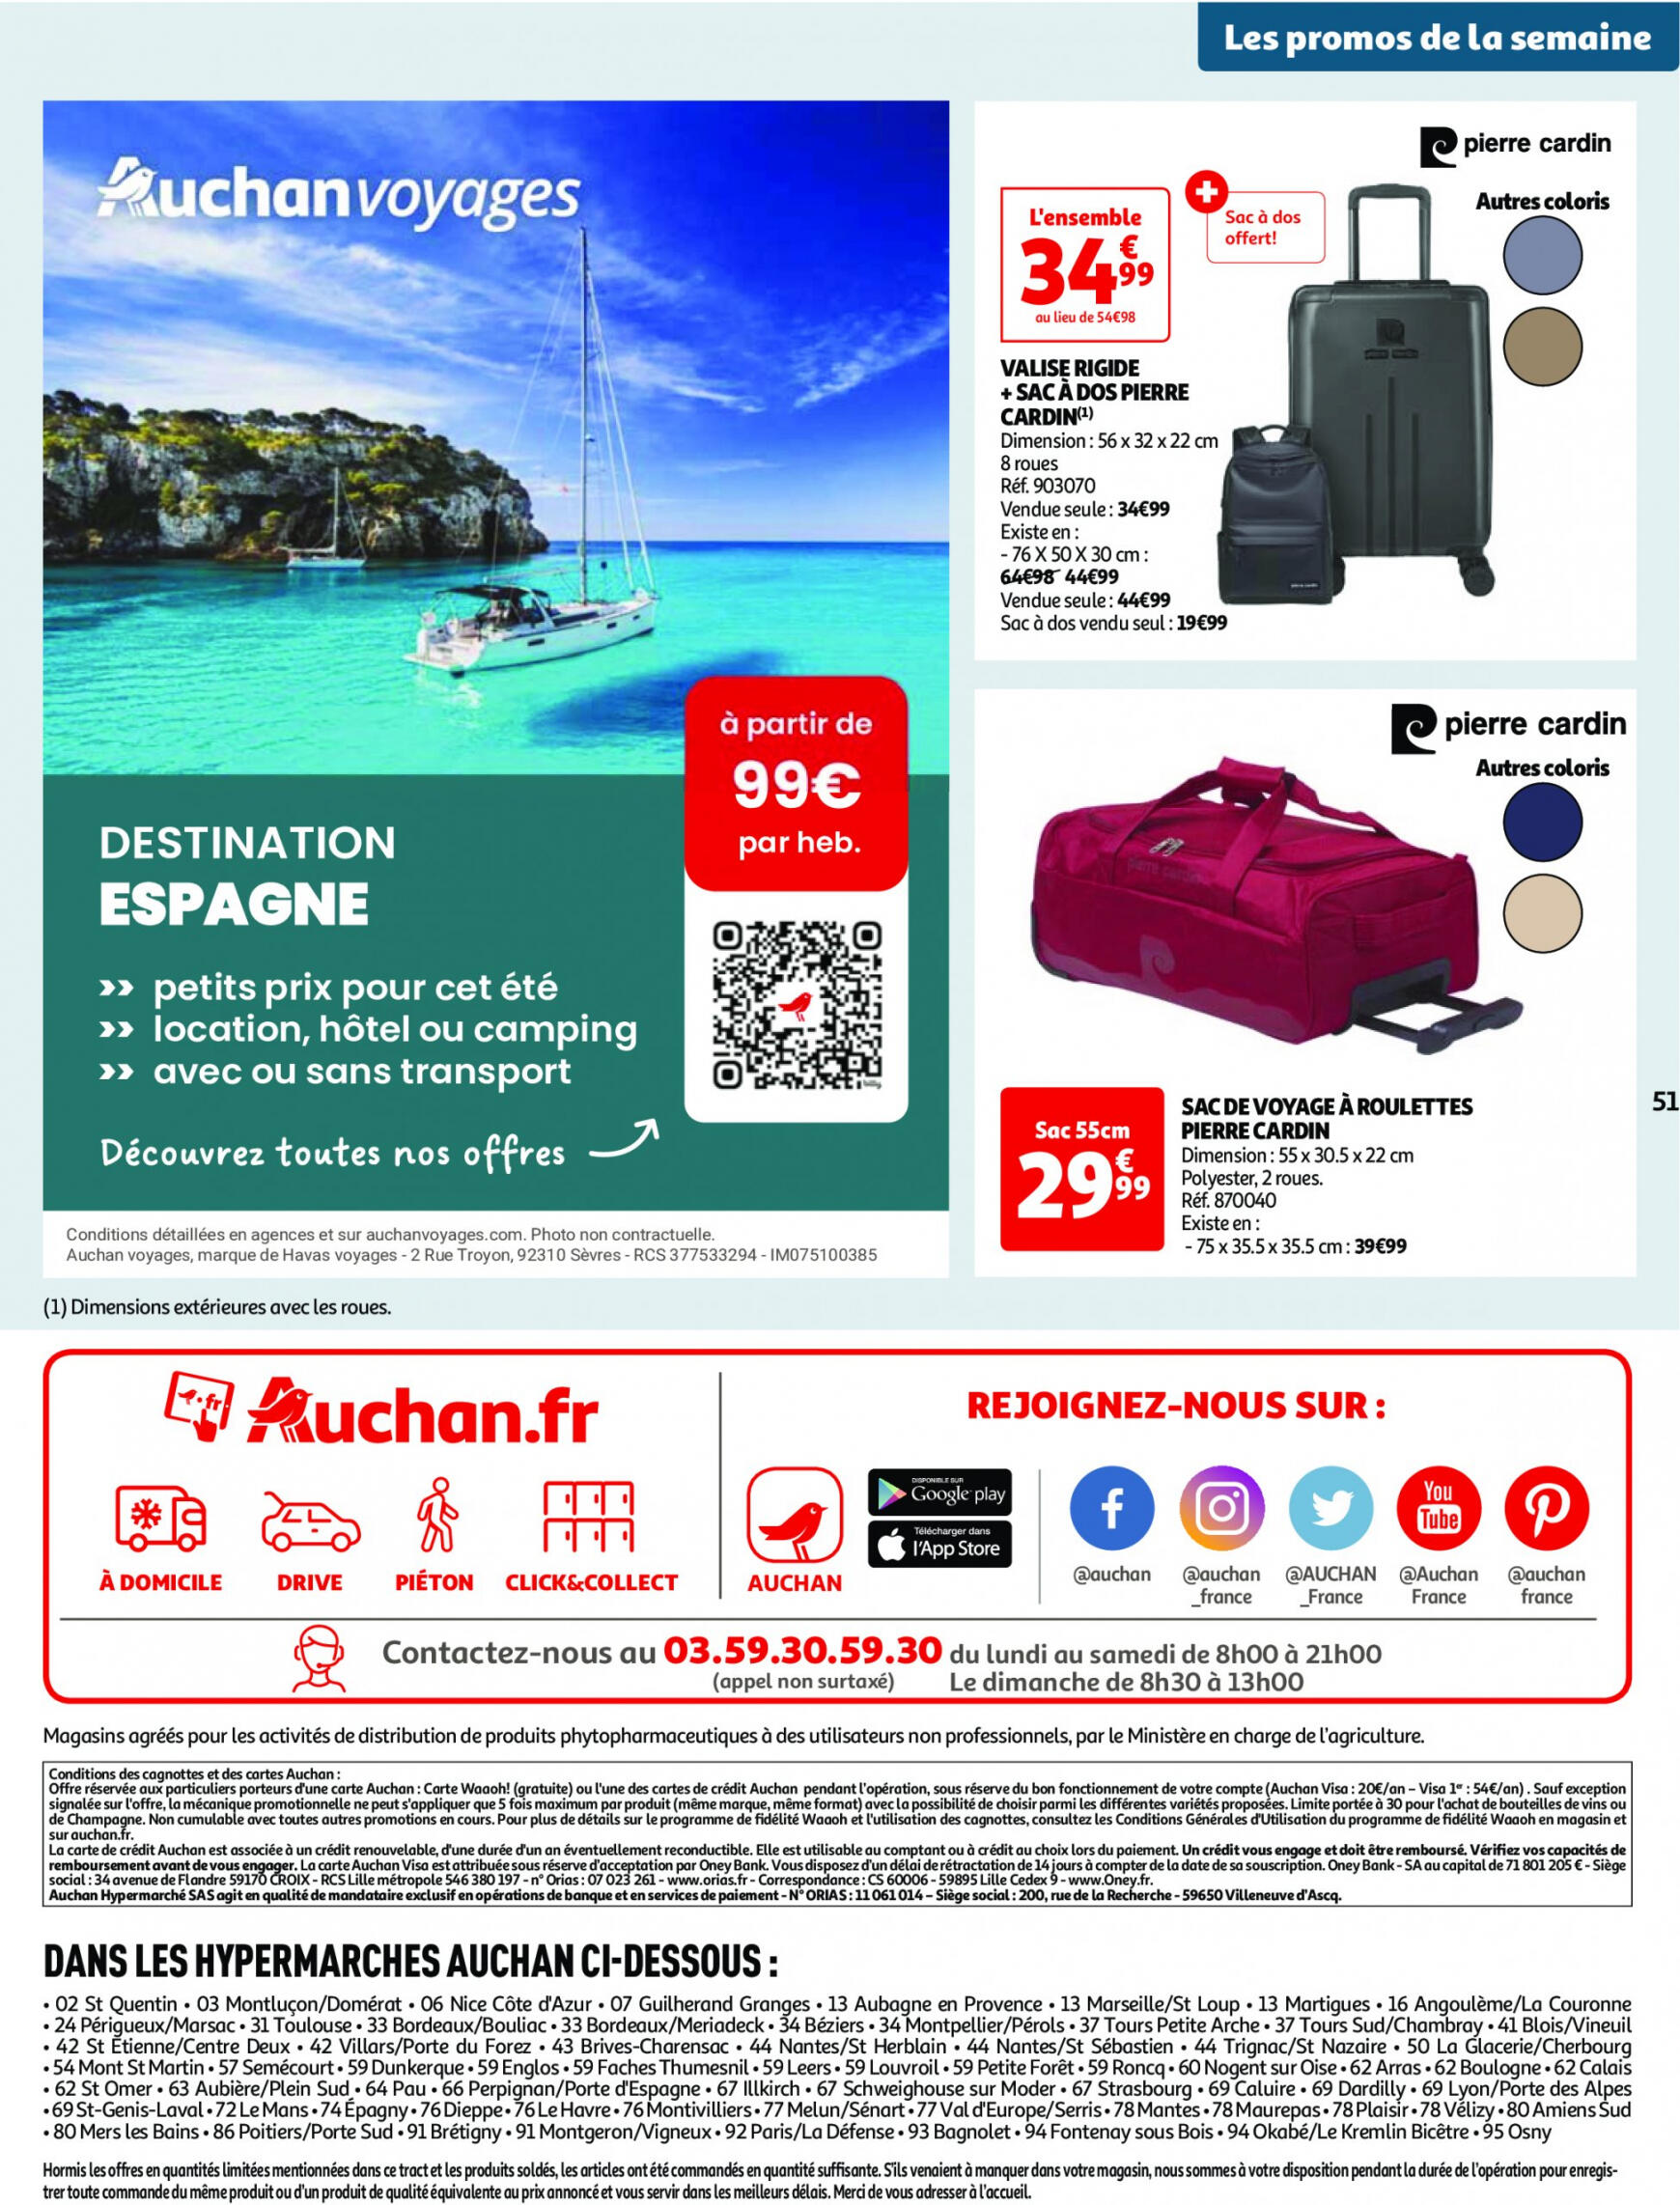 auchan - Prospectus Auchan actuel 14.05. - 21.05. - page: 51